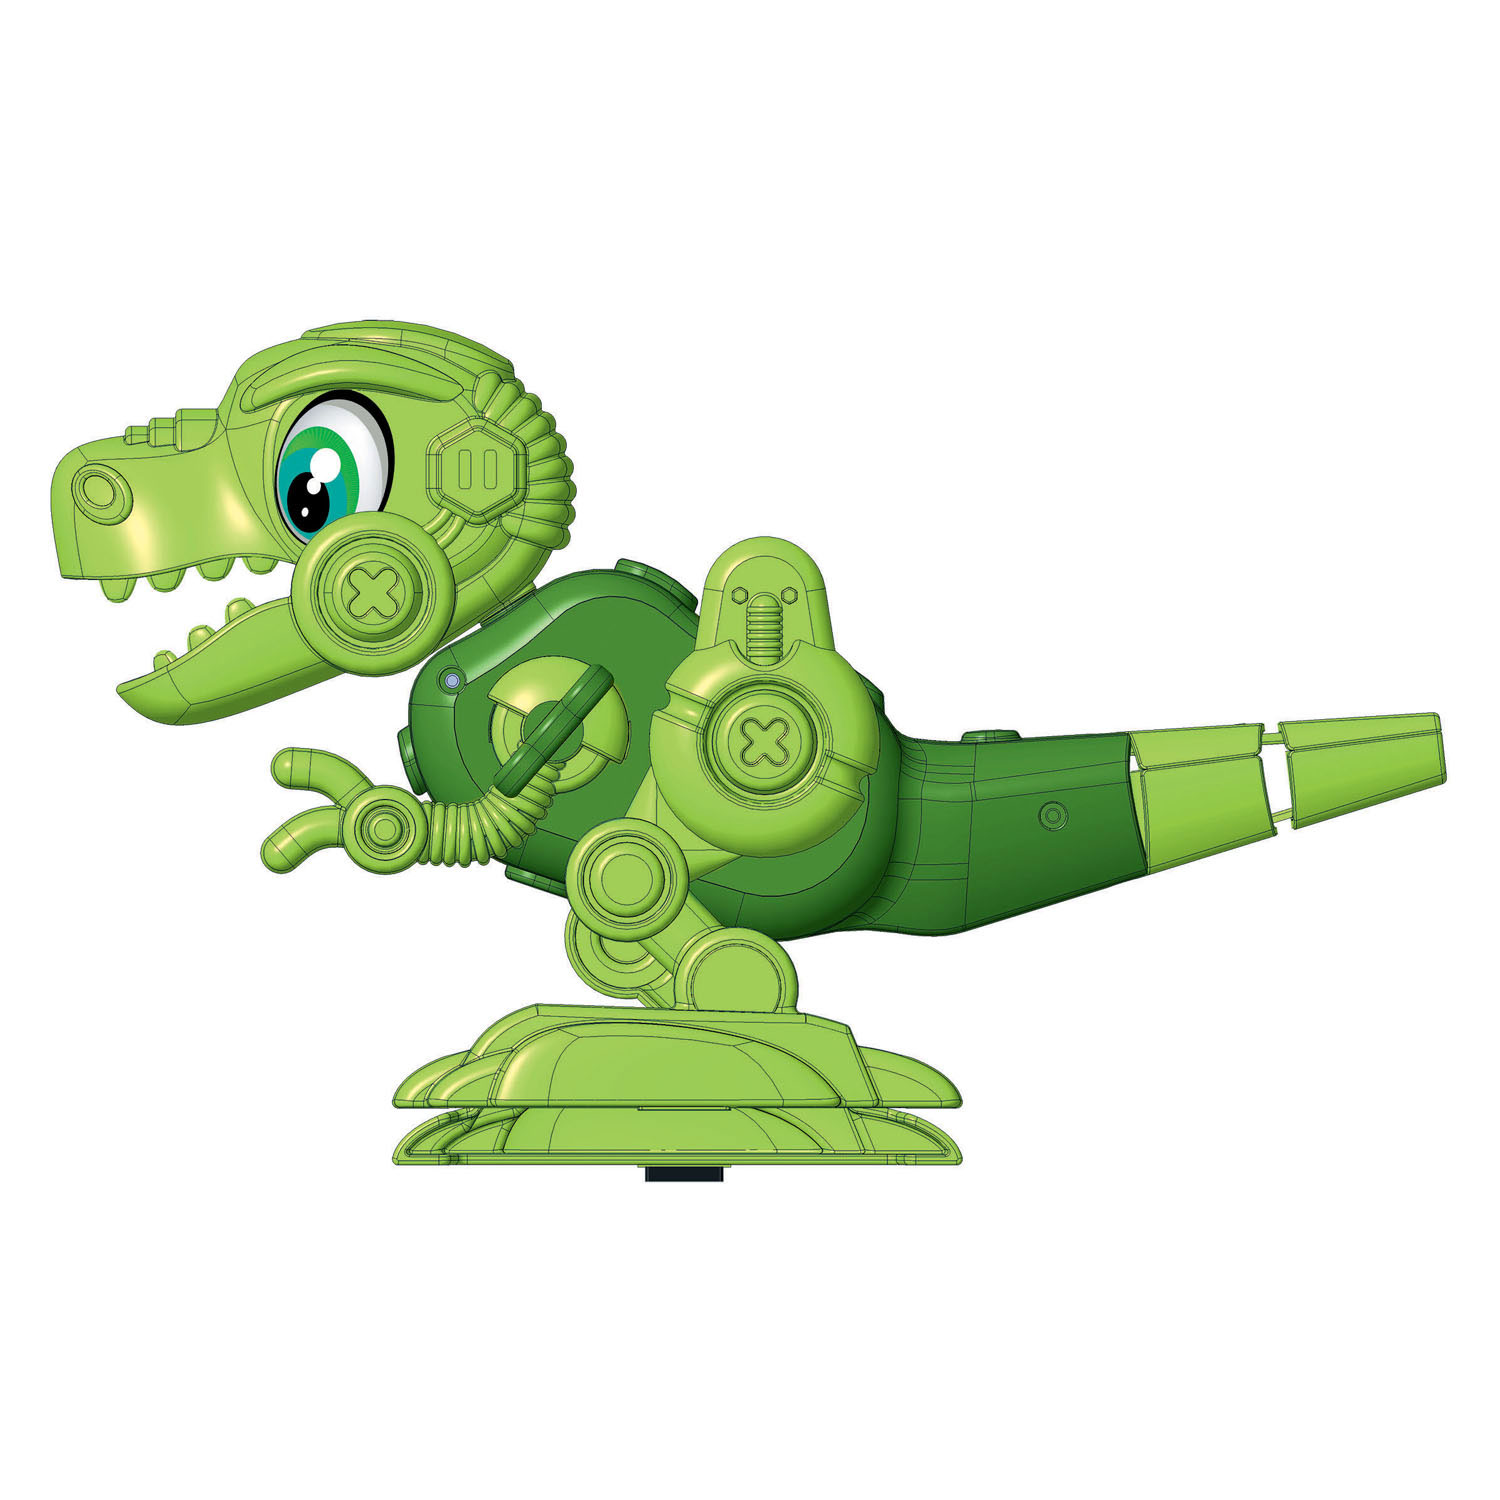 Clementoni Wetenschap & Spel Junior - Dino Bot T-Rex